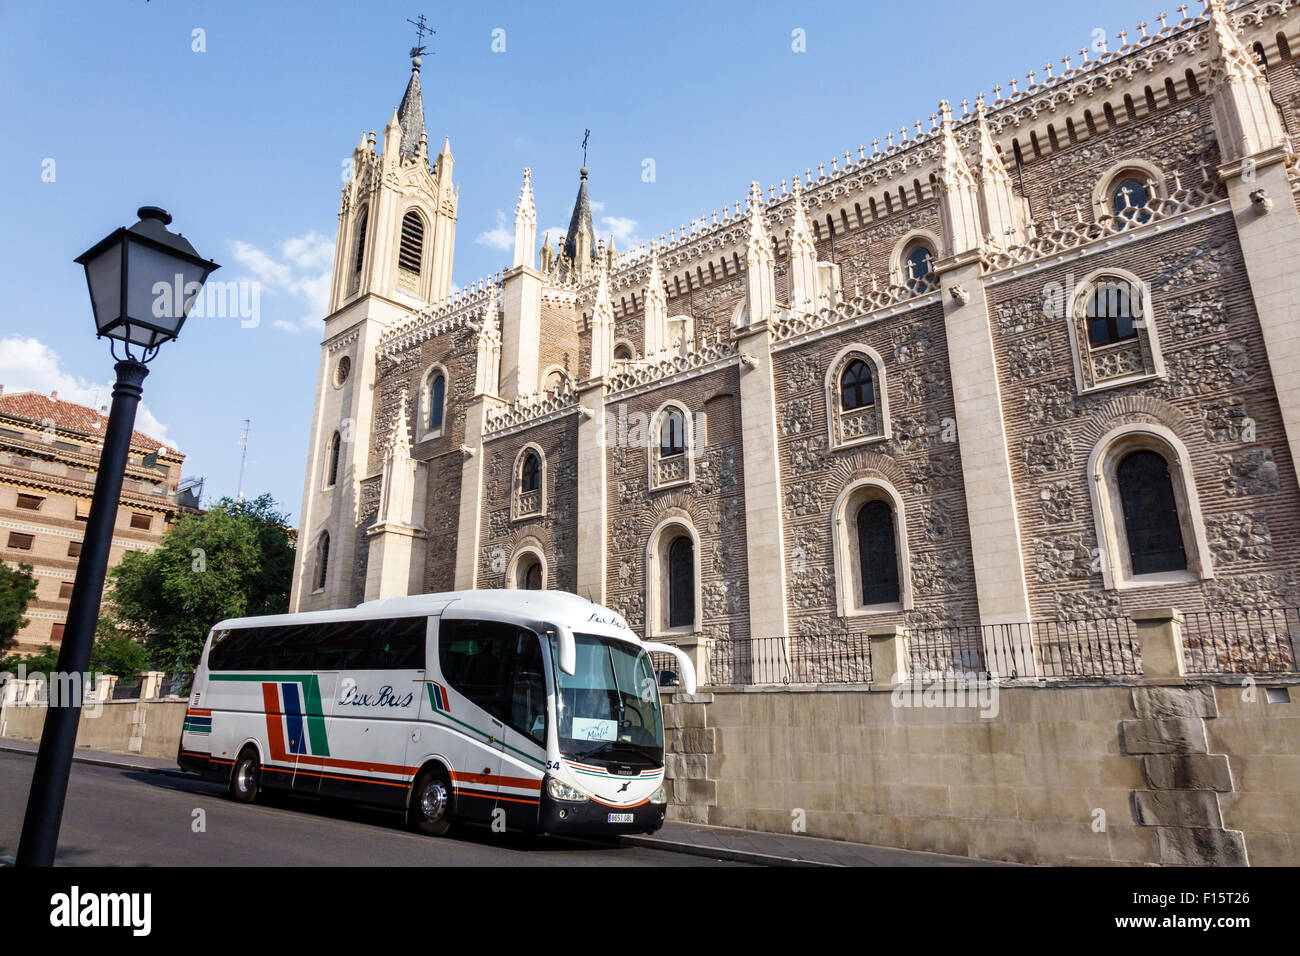 Madrid Spanien, Hispanic Retiro, San Jeronimo el Real, St. Jerome Royal Church, römisch-katholische Kirche, Religion, 16. Jahrhundert, gotisch, Architektur außen, Bus Stockfoto